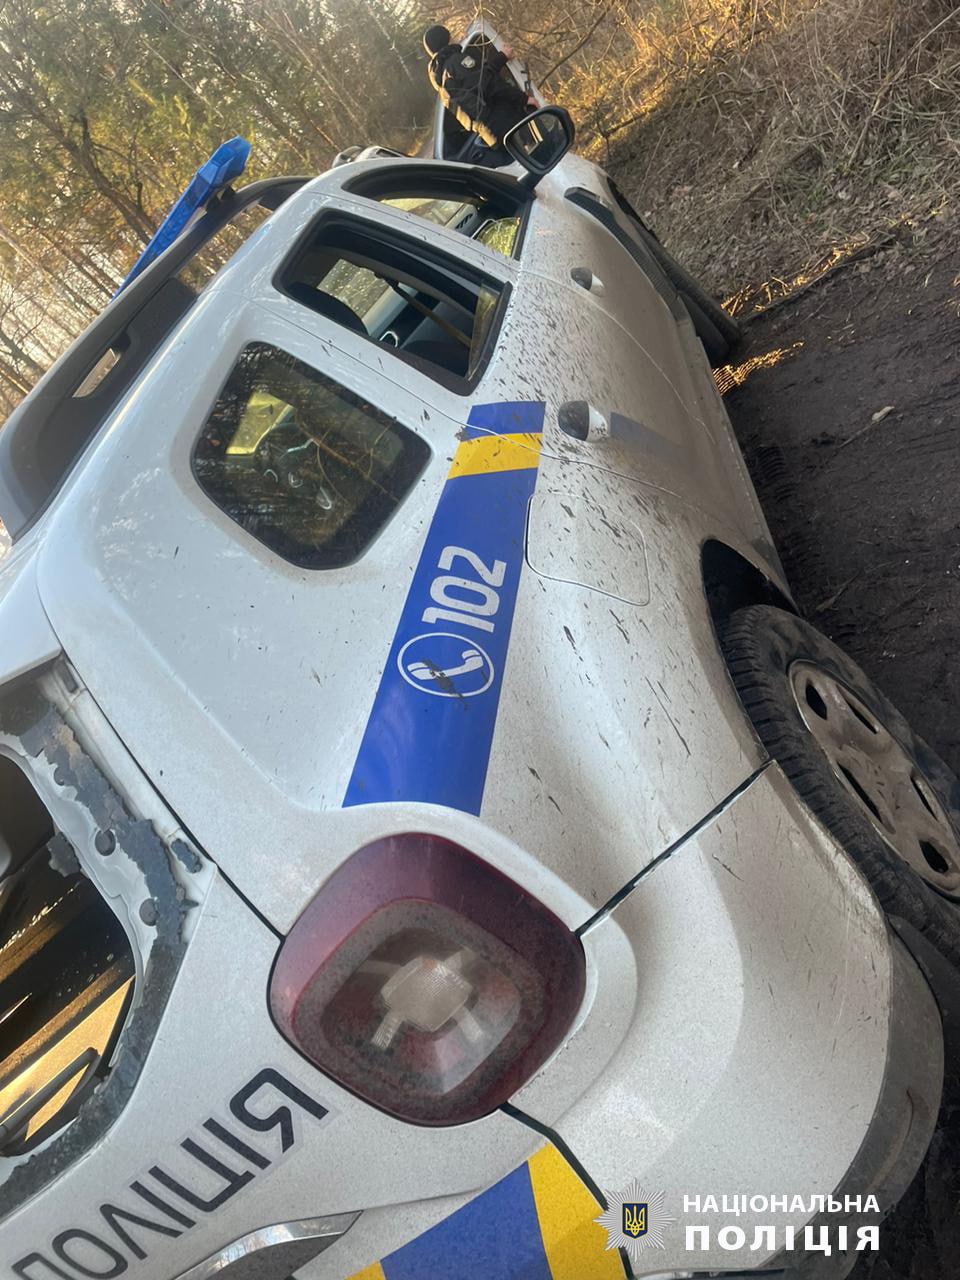 Авто поліцейських, Харківщина